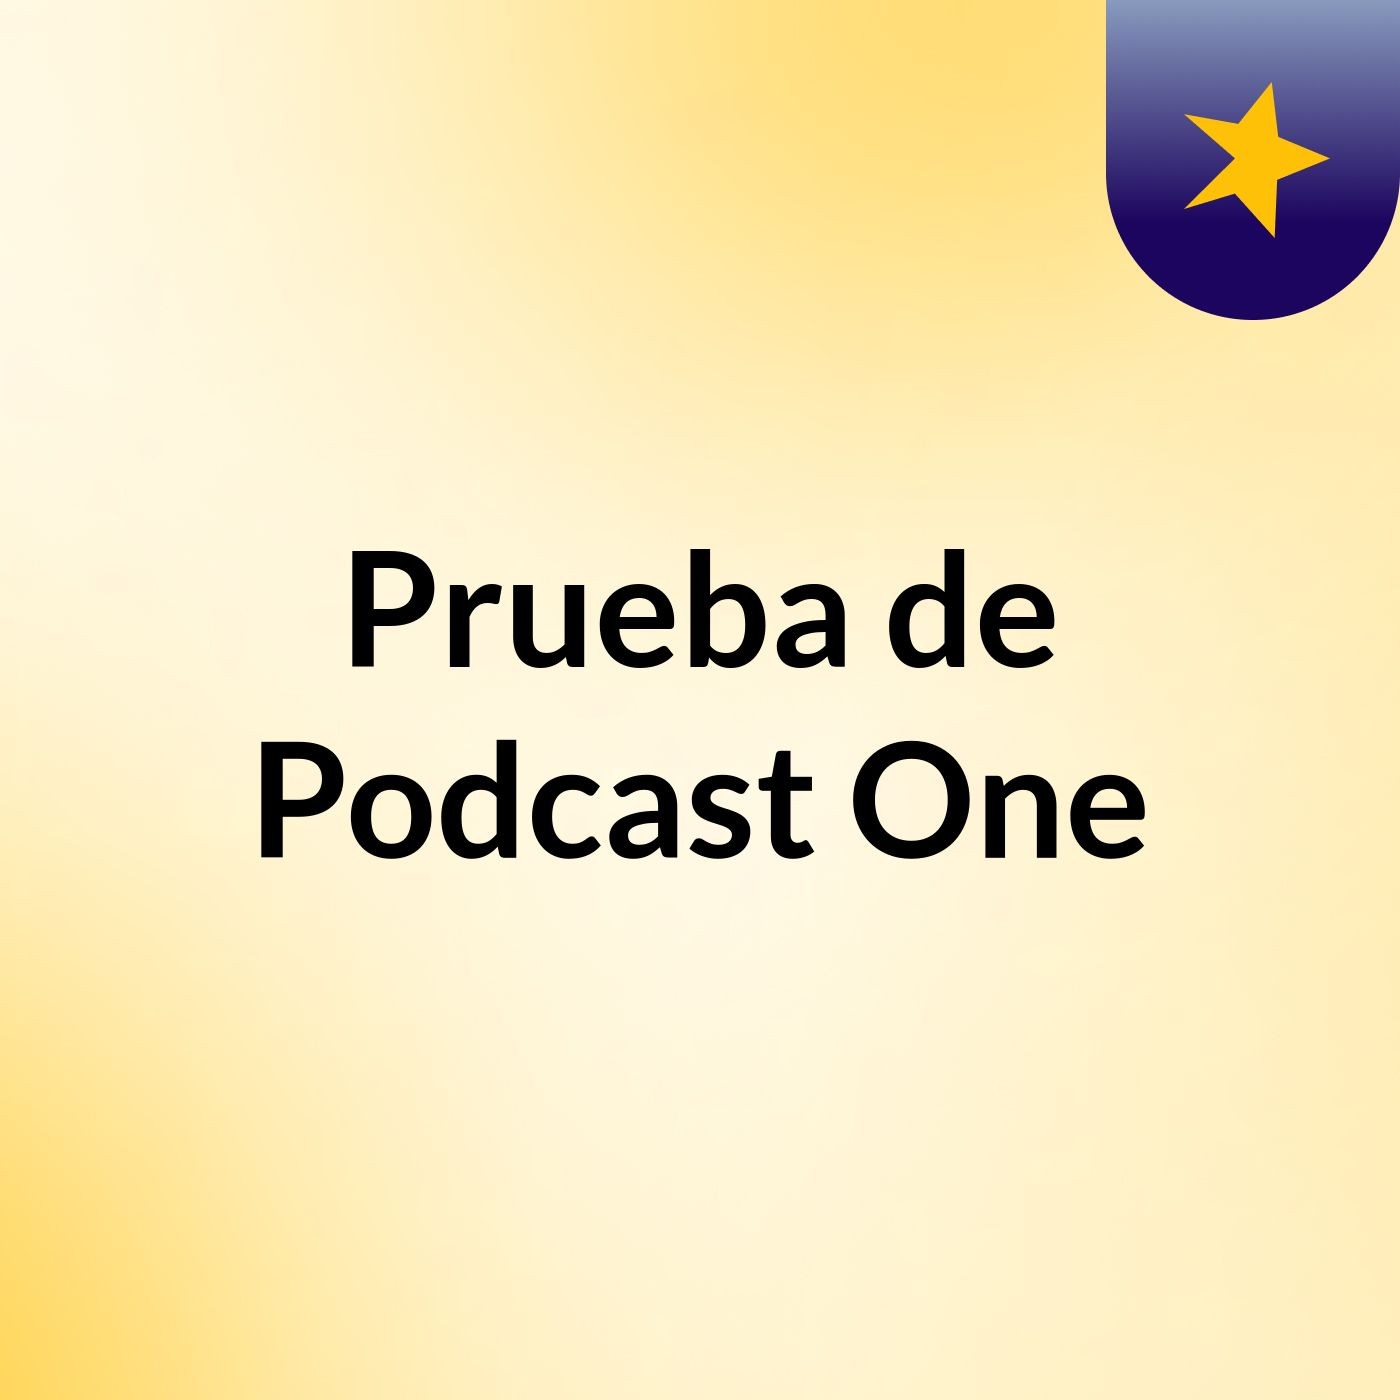 Prueba de Podcast One